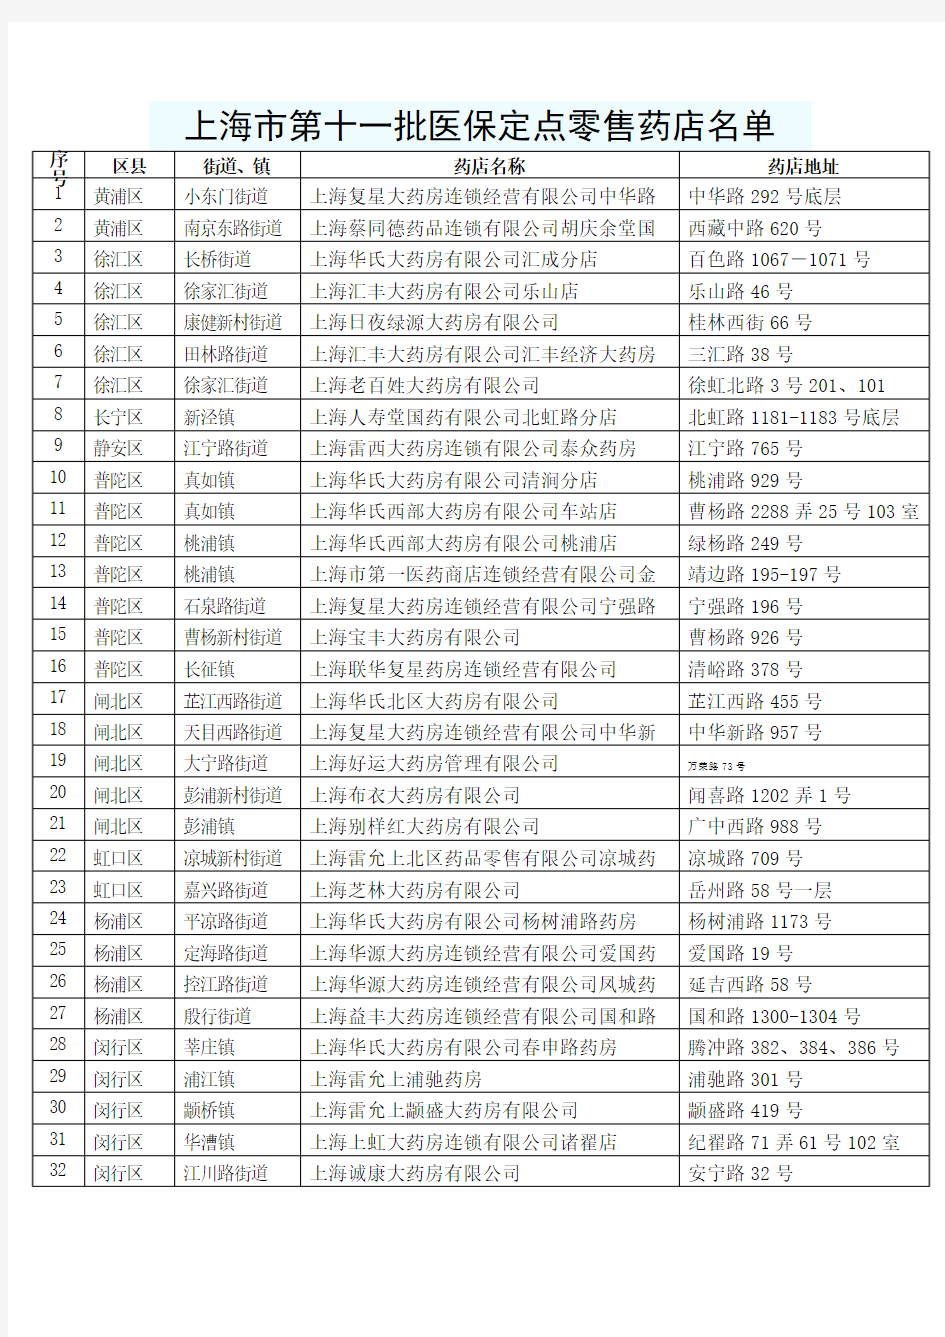 上海市第十一批医保定点零售药店名单